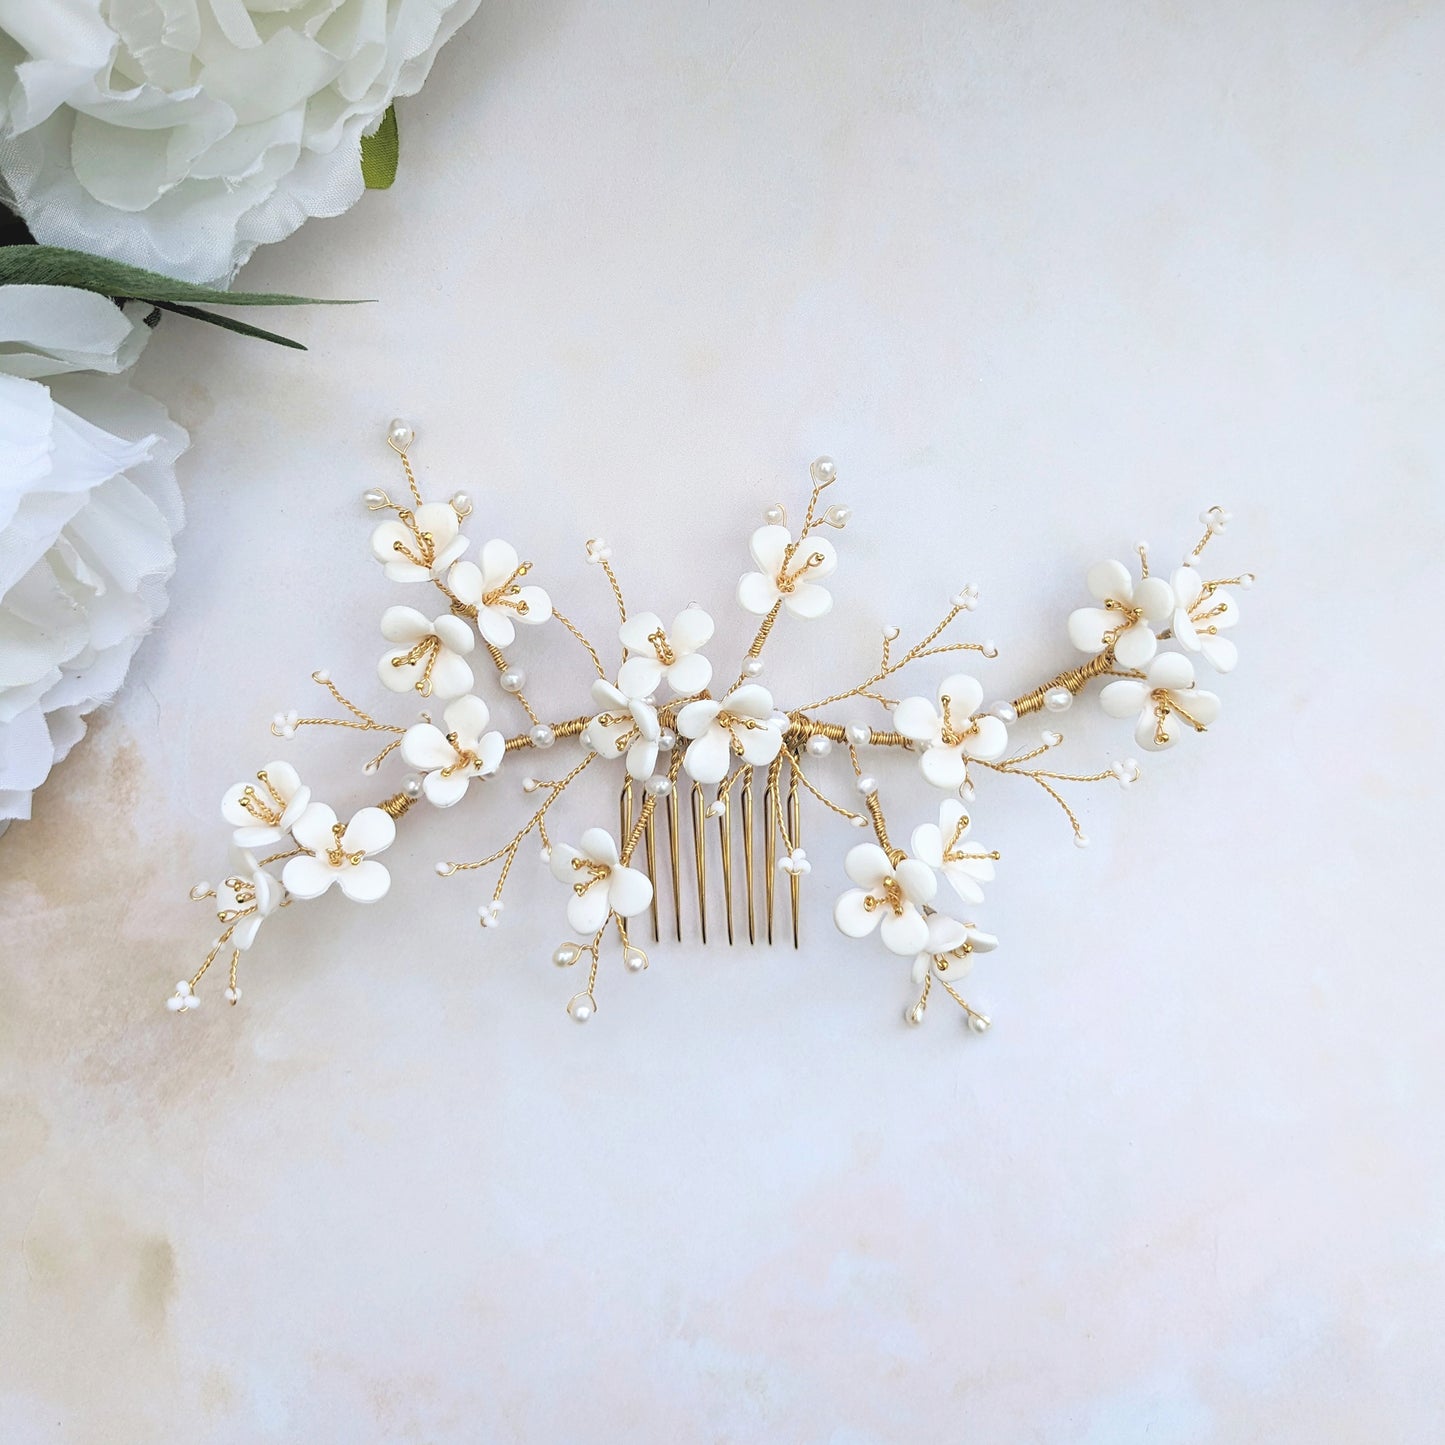 Modern floral wedding headpiece for brides - Susie Warner